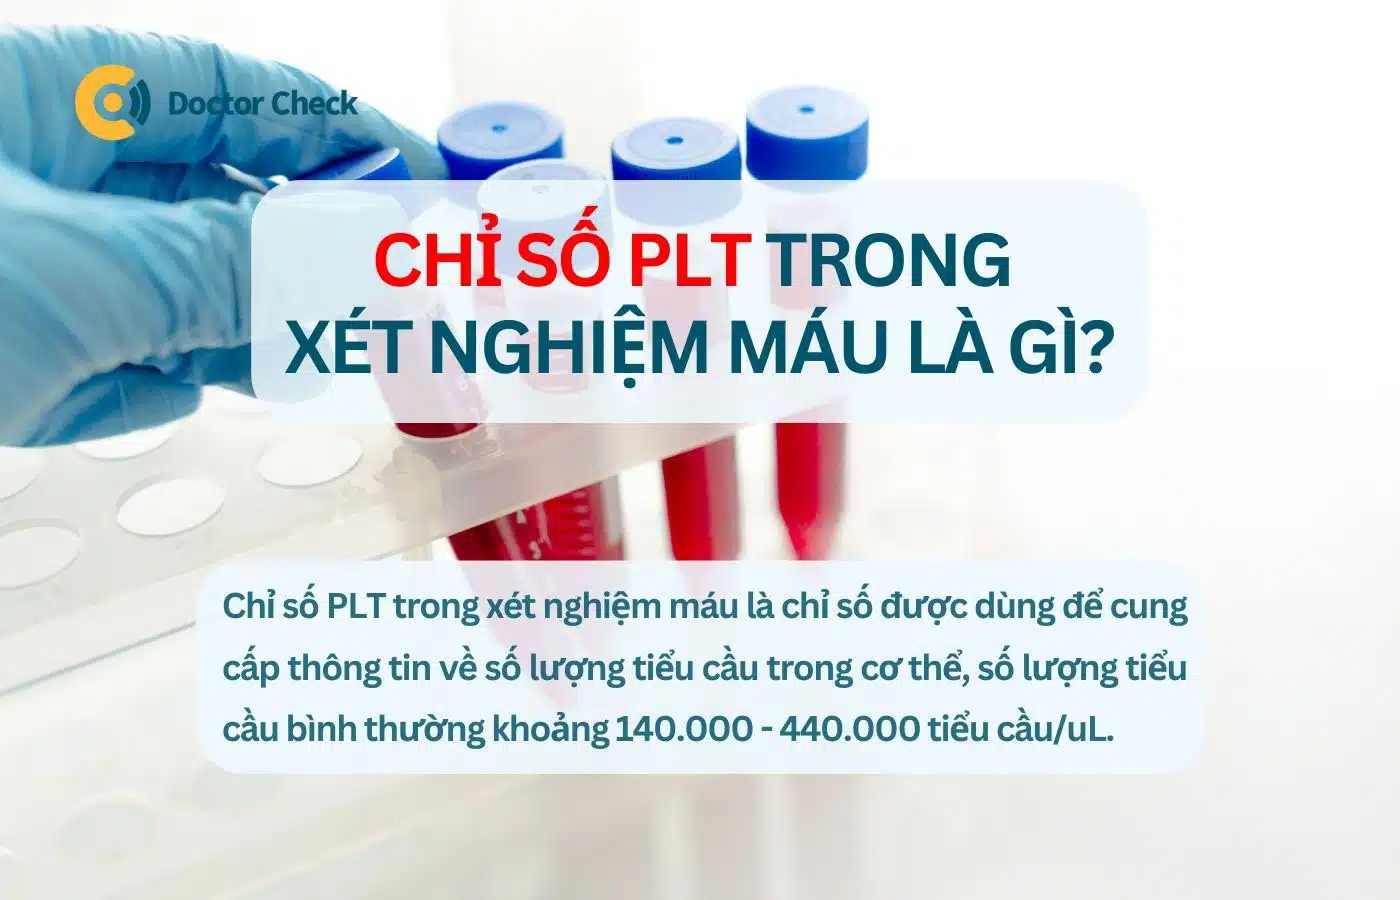 Chỉ số PLT trong xét nghiệm máu là gì?